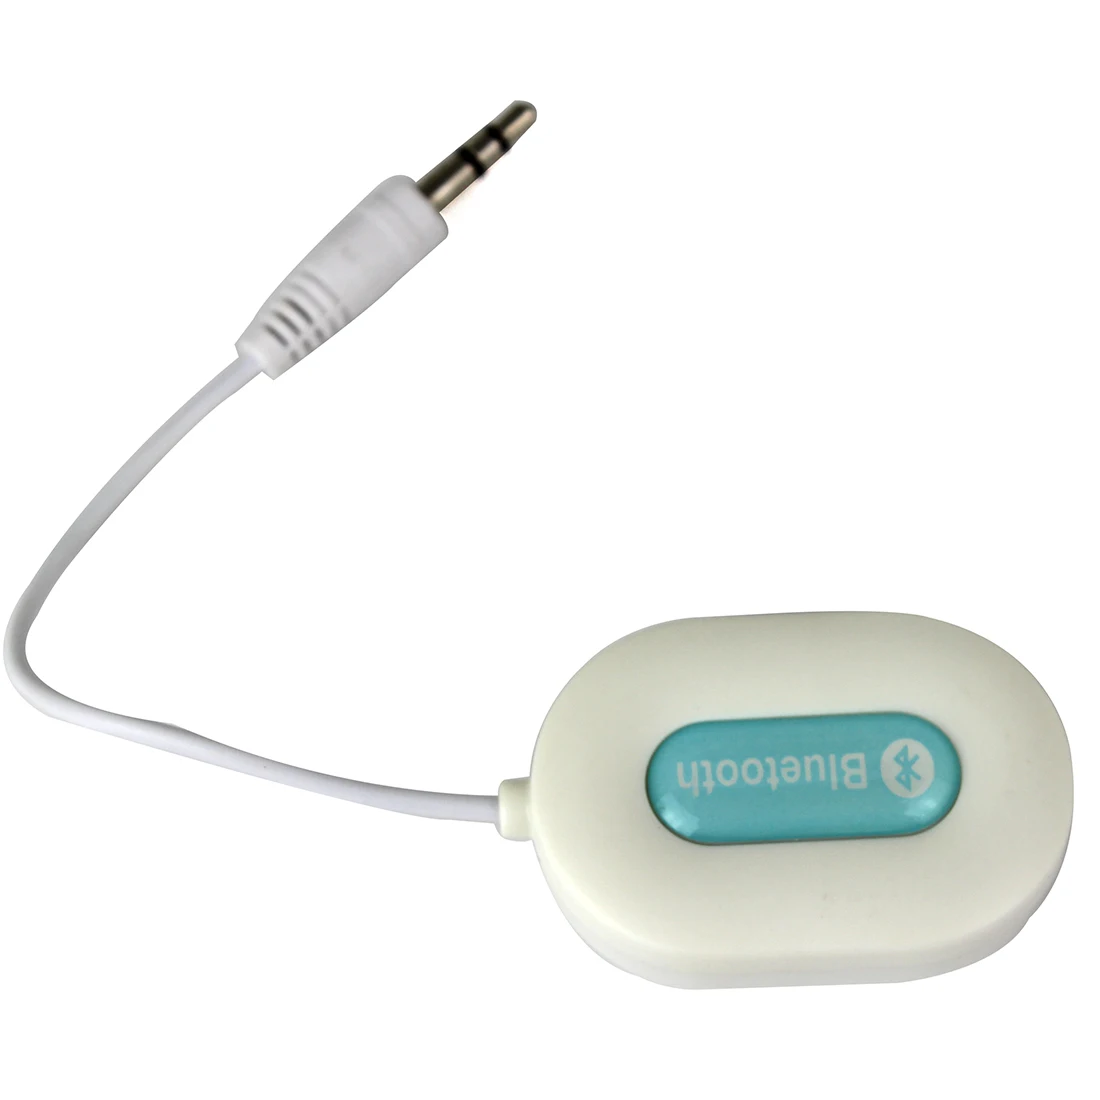 Etmakit Мини 3,5 мм Bluetooth аудио приемник A2DP стерео для смартфонов и планшетов, белый цвет